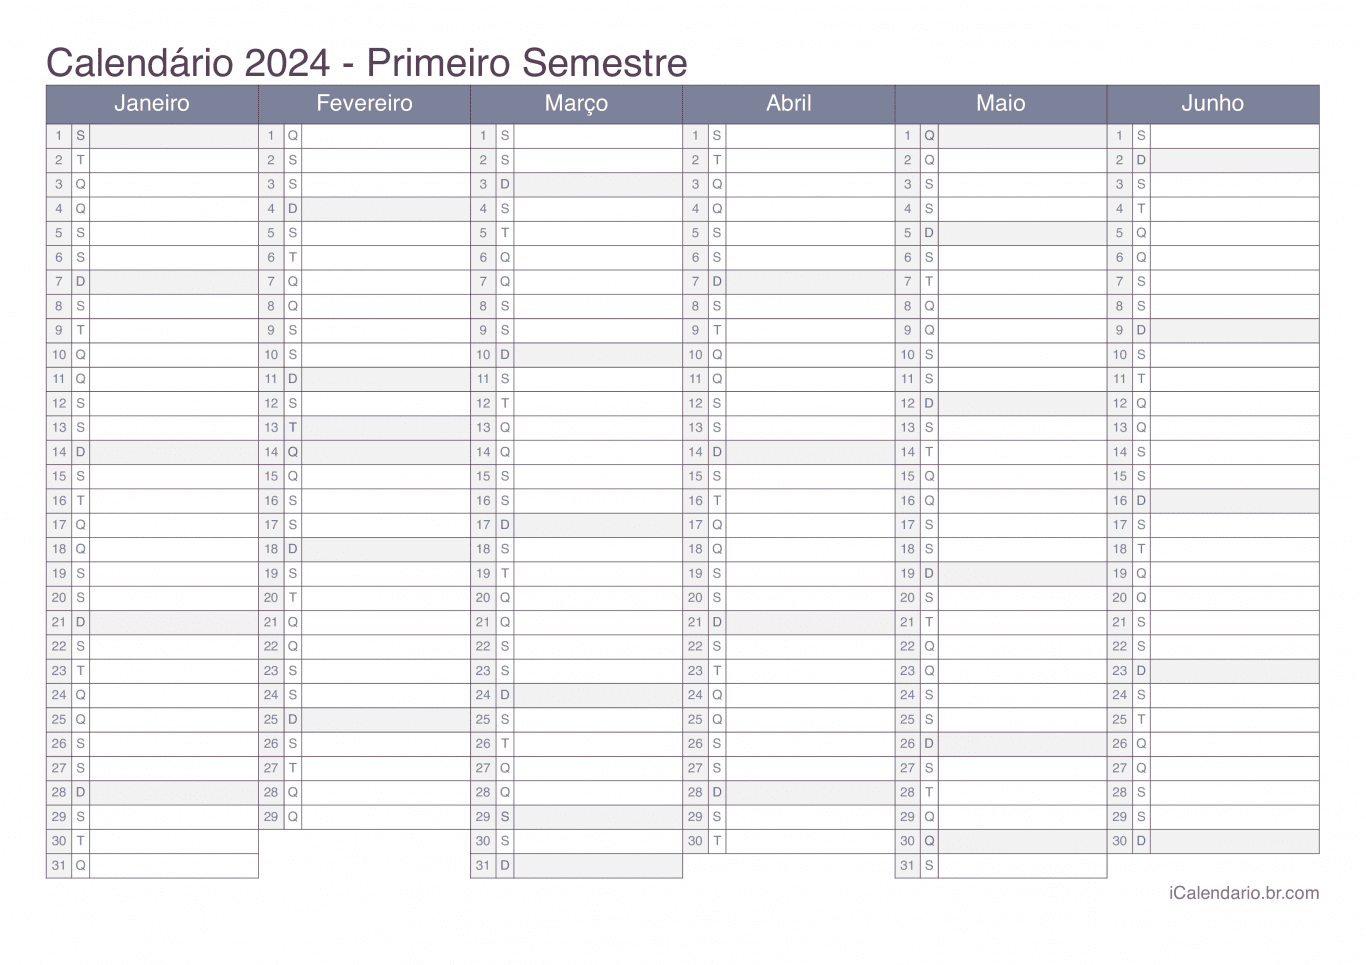 Calendário por semestre 2024 - Office